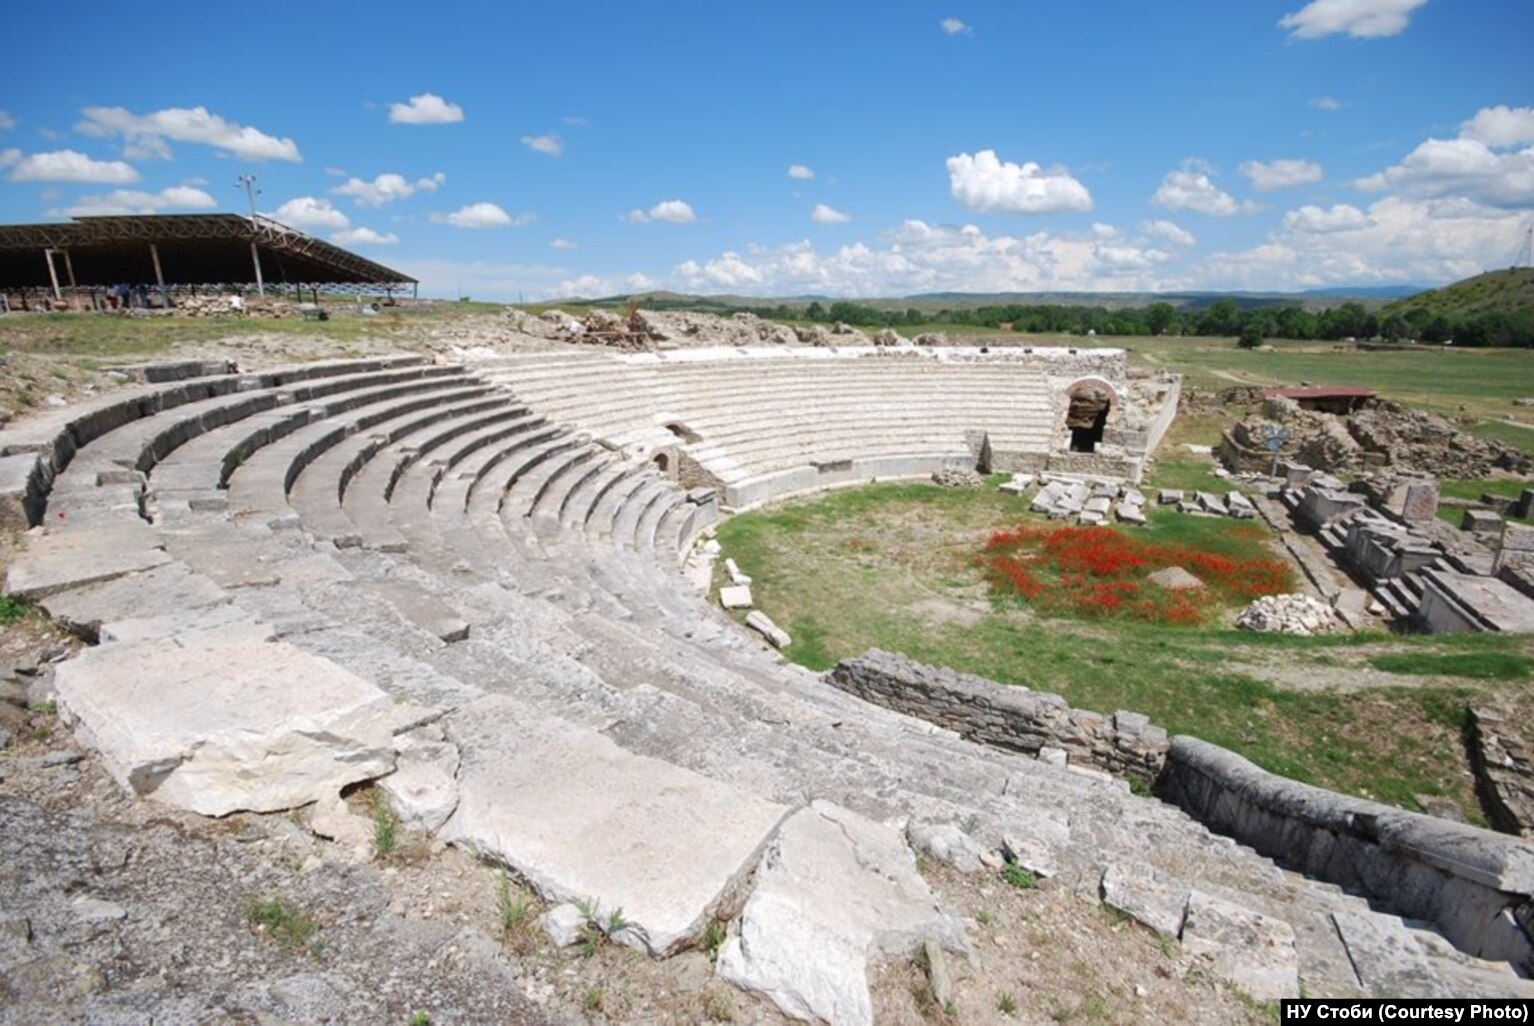 Amfiteatri antik në Stobi, që është lokacioni më i madh arkeologjik i këtij vendi, njihet për rëndësinë e tij universale në listën ë Fondit Botëror të Monumenteve.